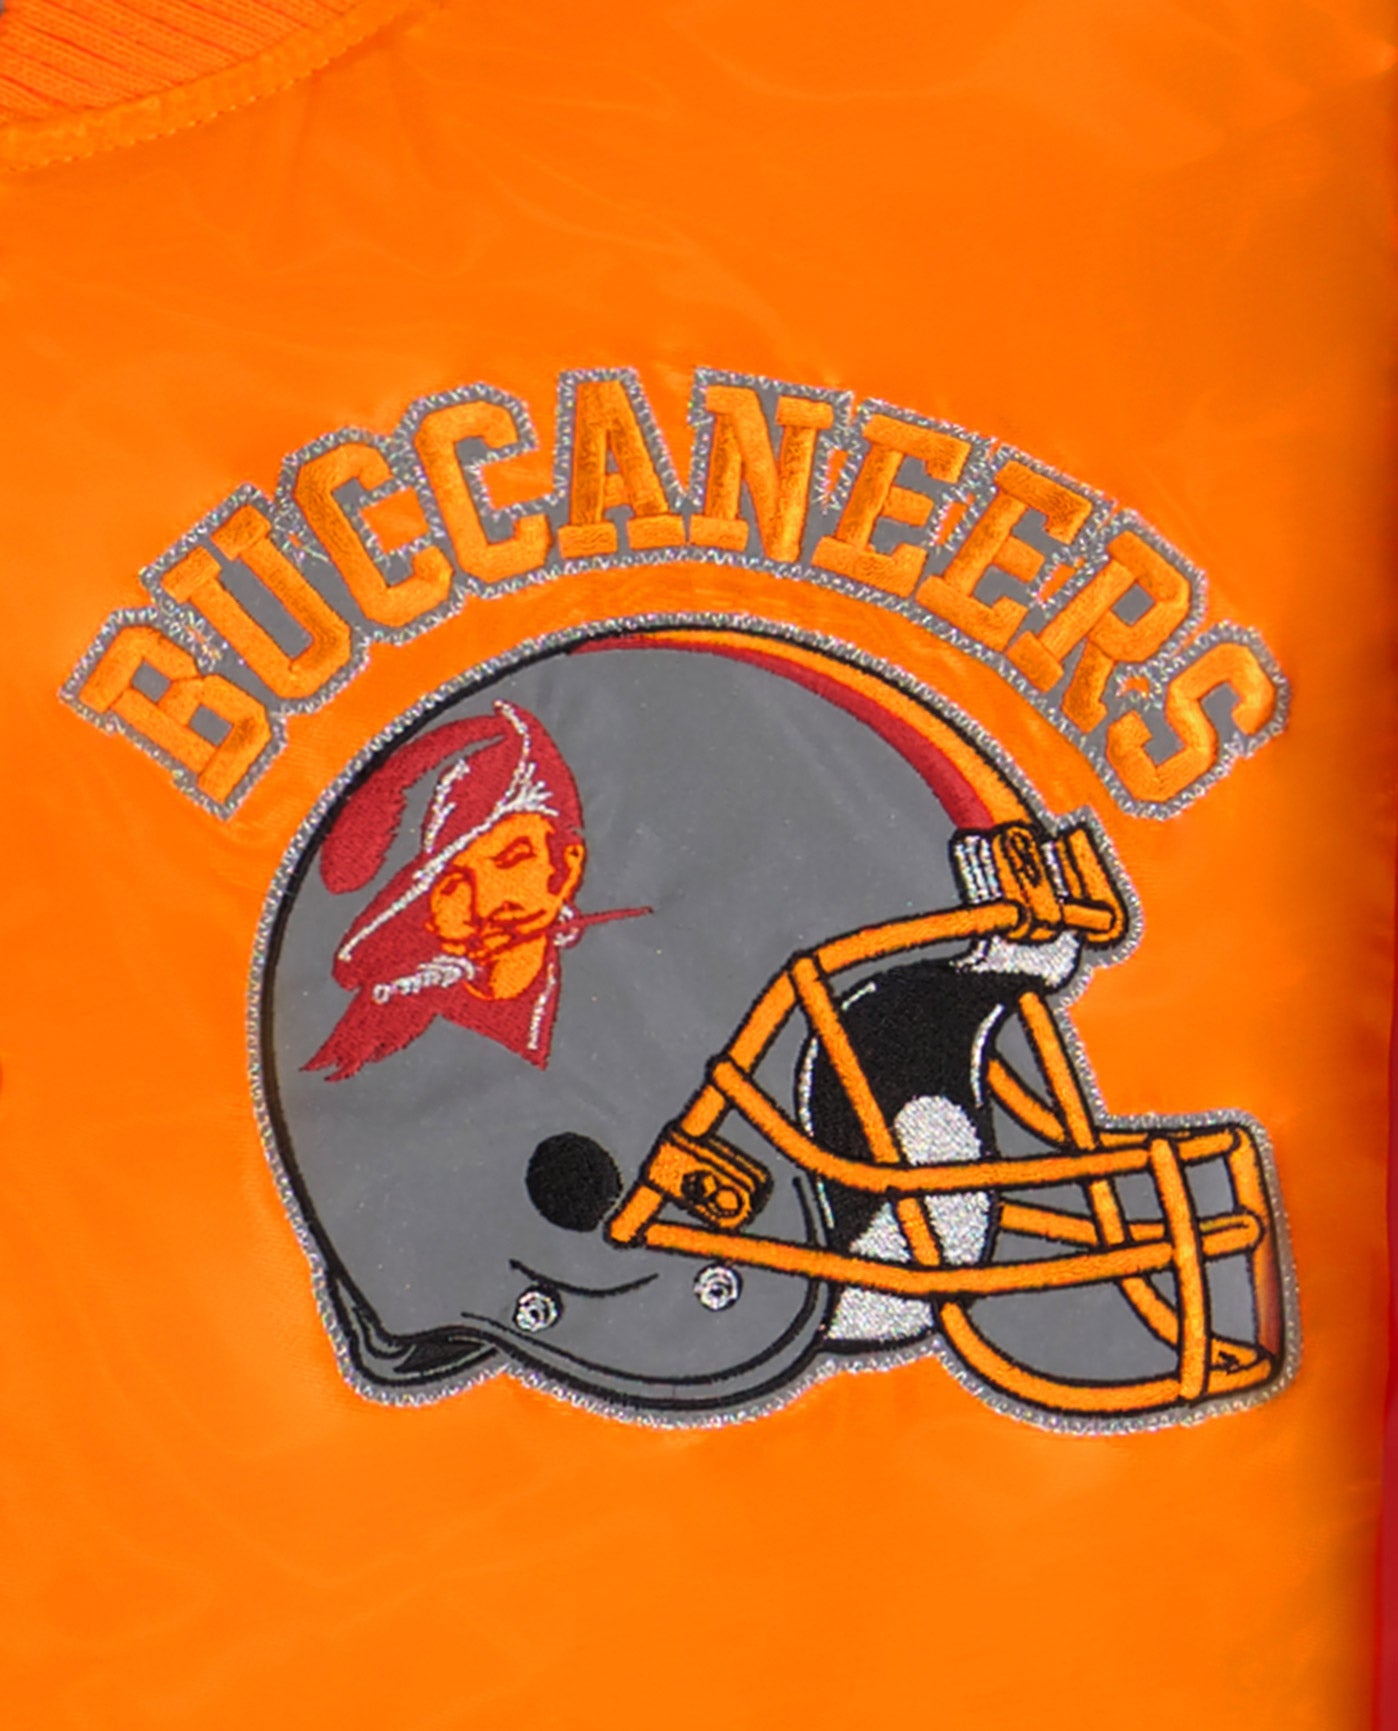 BUCCANEERS writing and helmet logo top left chest | Buccaneers Gold